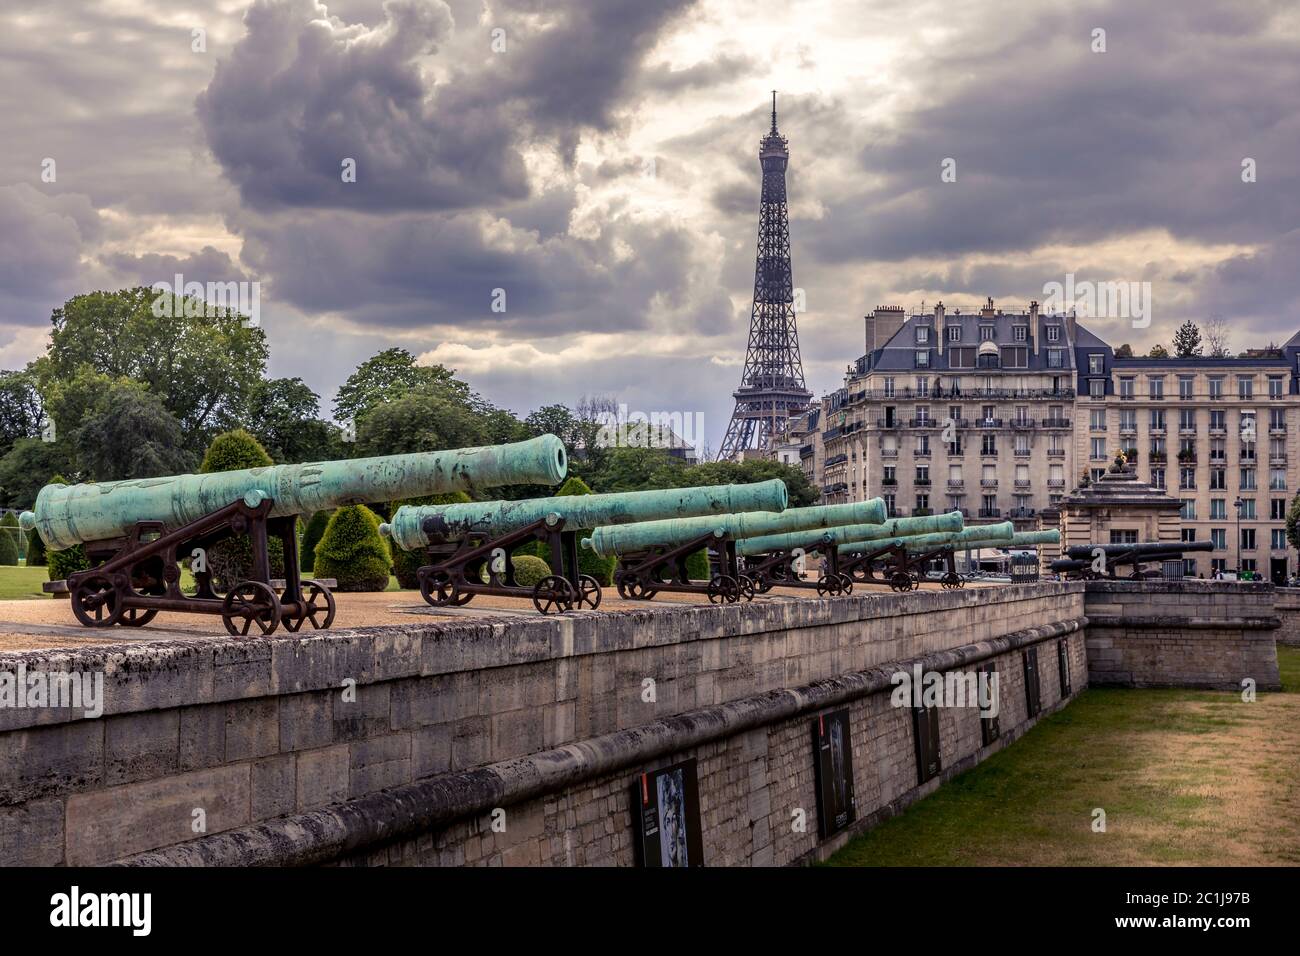 Paris, France - 10 juin 2020 : les canons de guerre à l'entrée du bâtiment des Invalides et la tour Eiffel en arrière-plan Banque D'Images